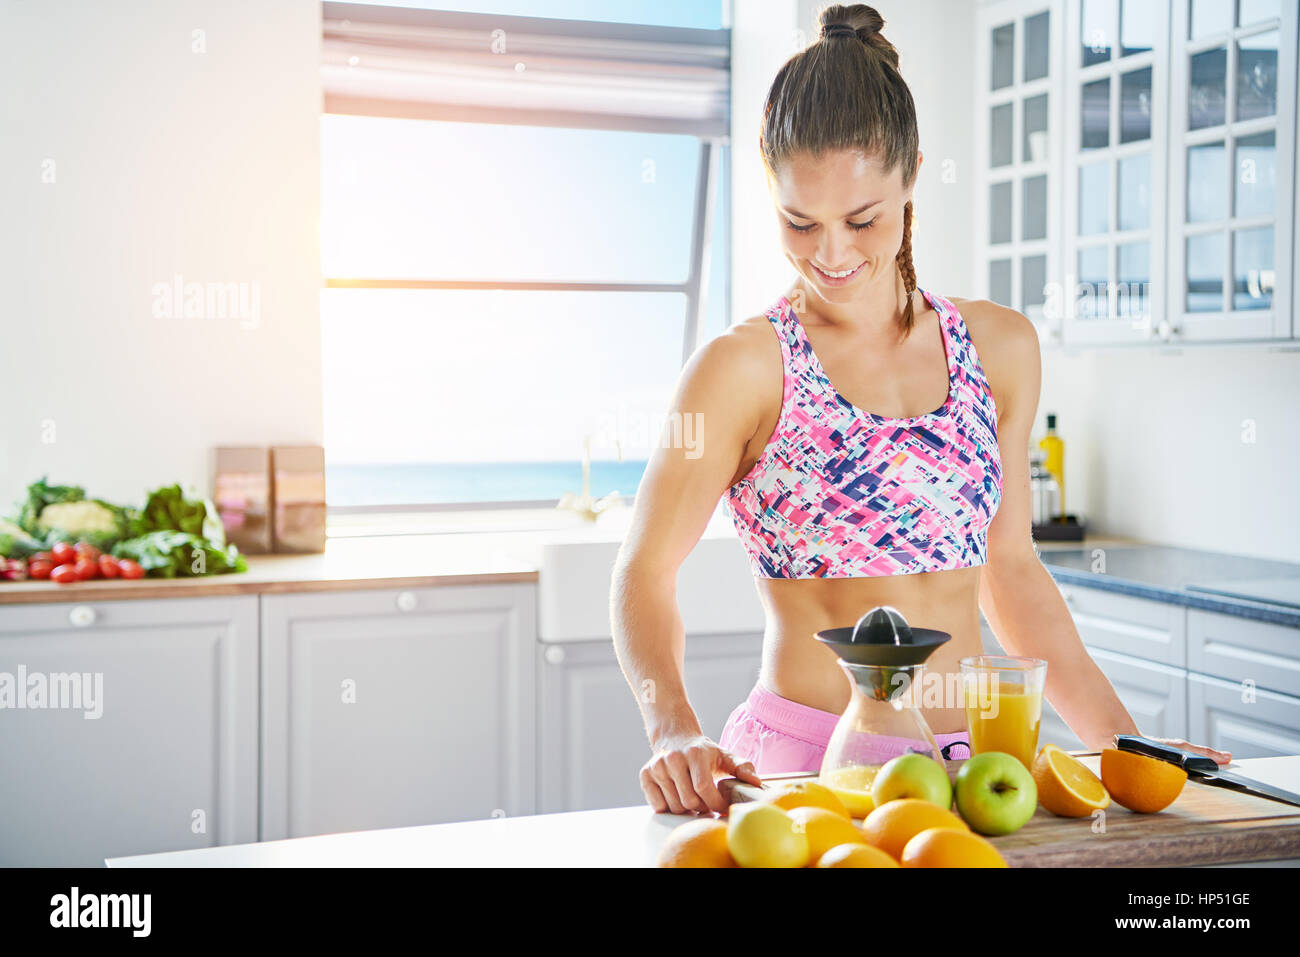 Glückliche junge Frau mit muskulösen Körper stehen in der Küche und frische. Horizontale drinnen erschossen Stockfoto